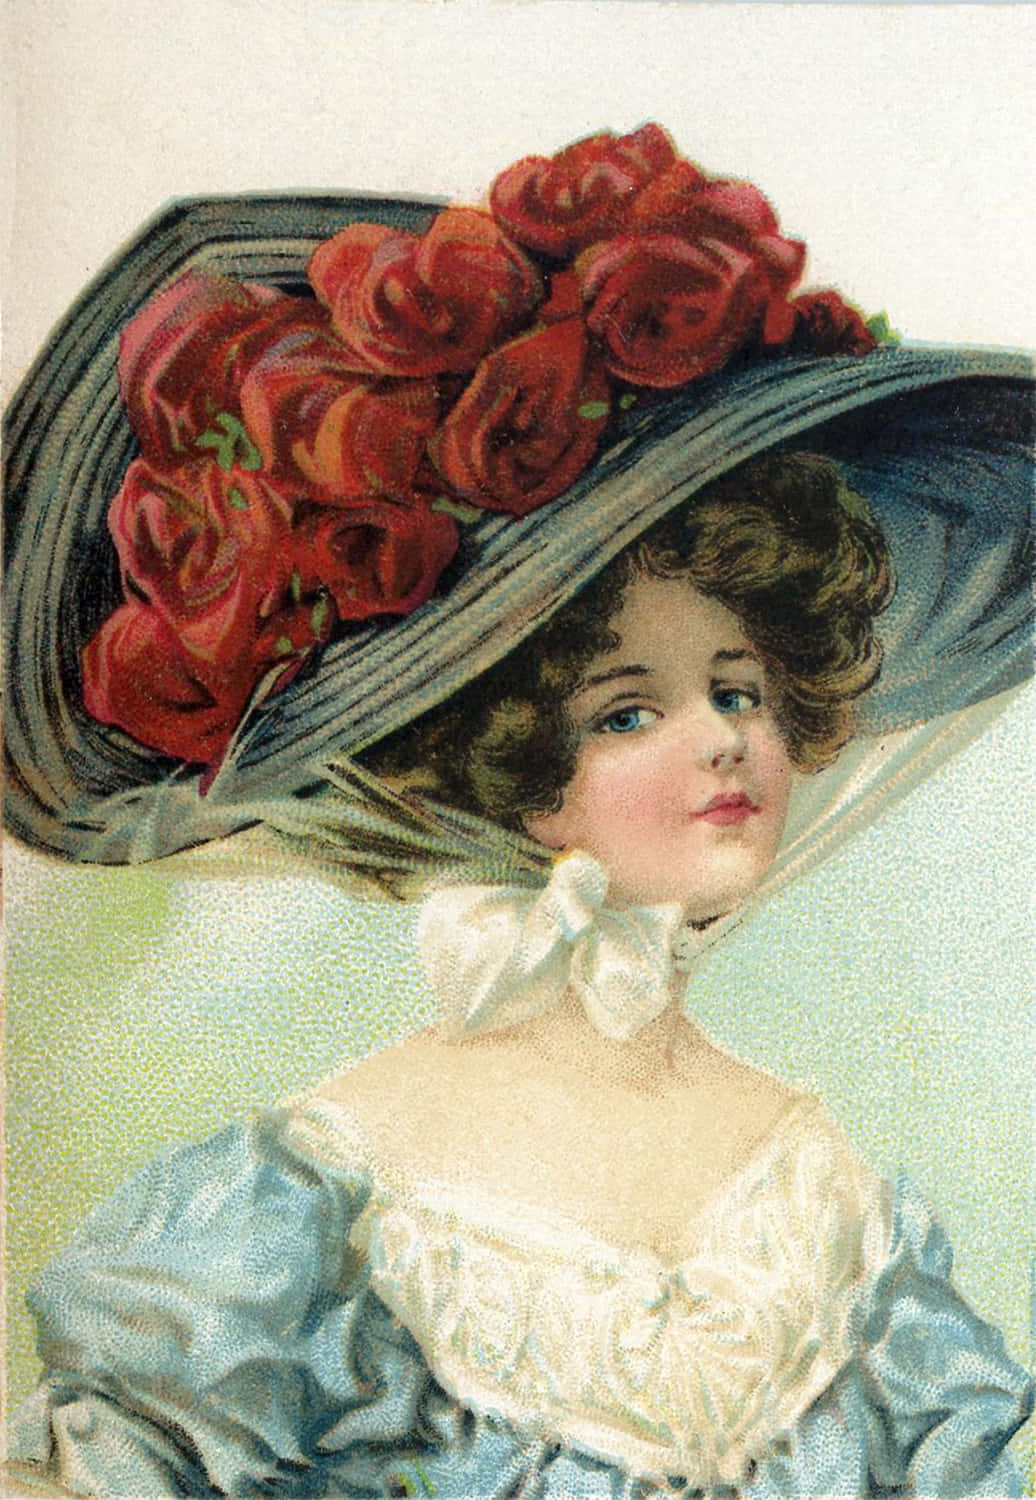 Enkvinna I En Hatt